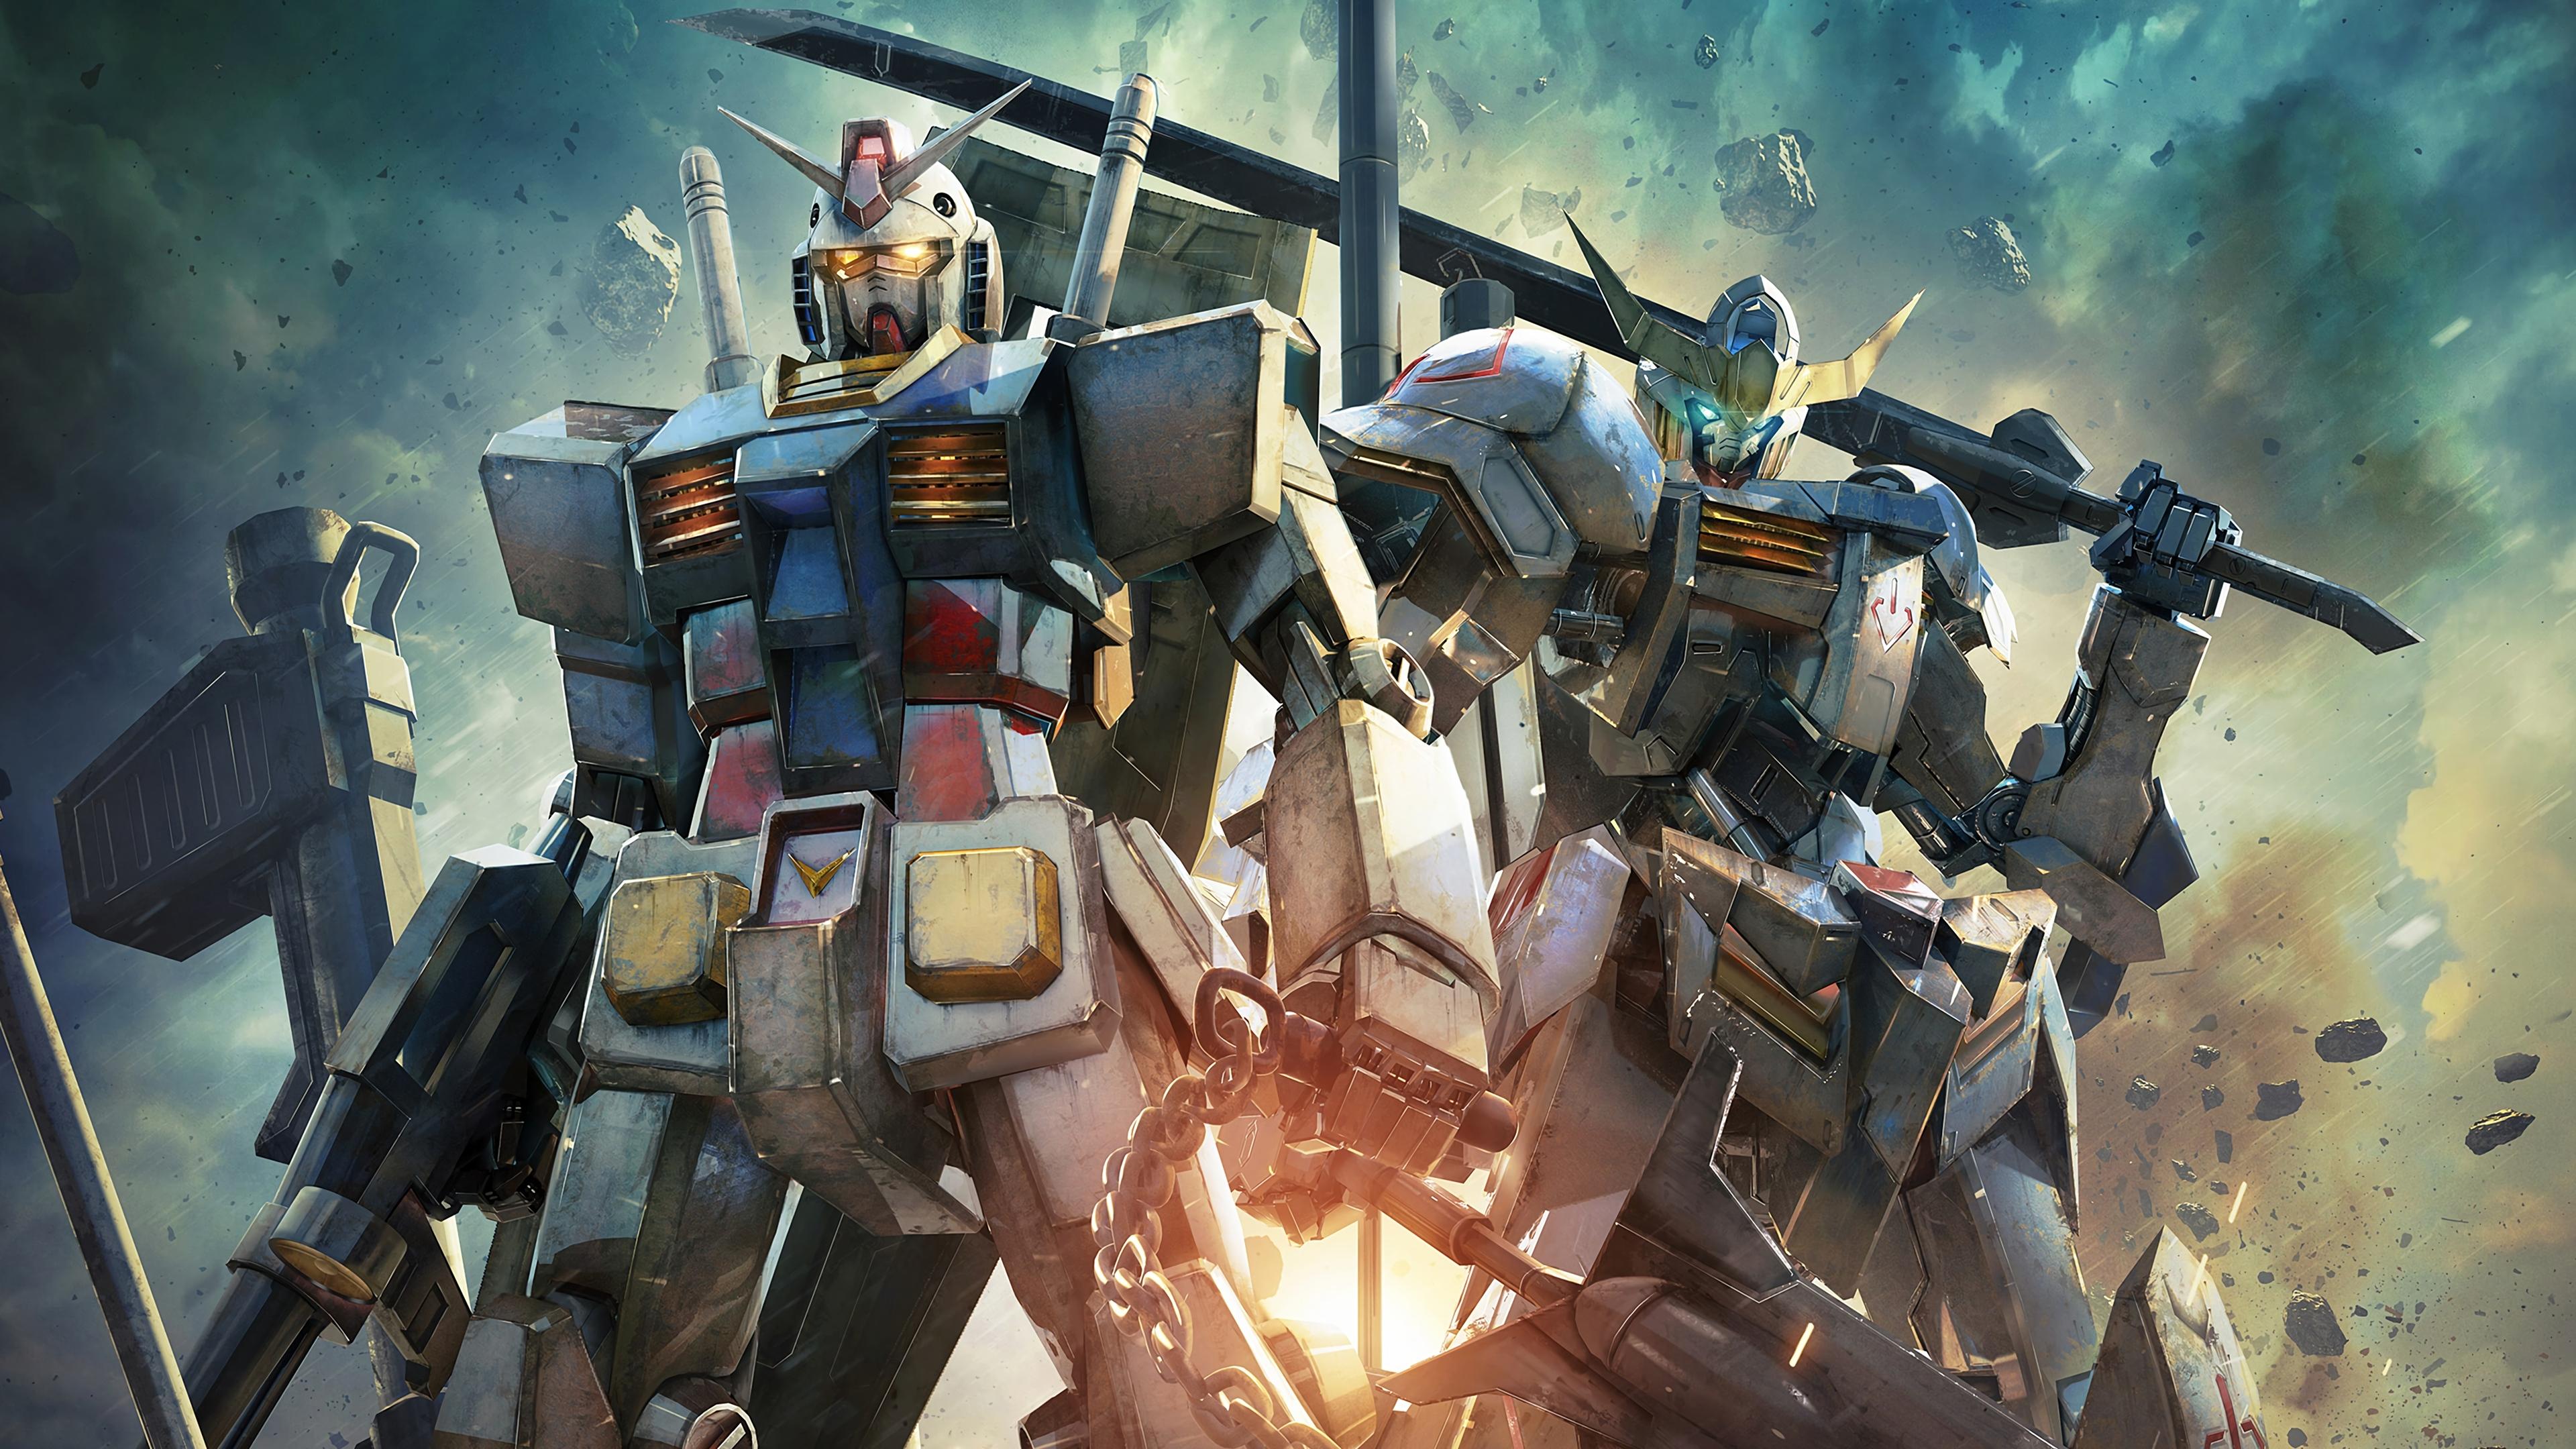 Gundam Wallpapers Top Free Gundam Backgrounds Wallpaperaccess